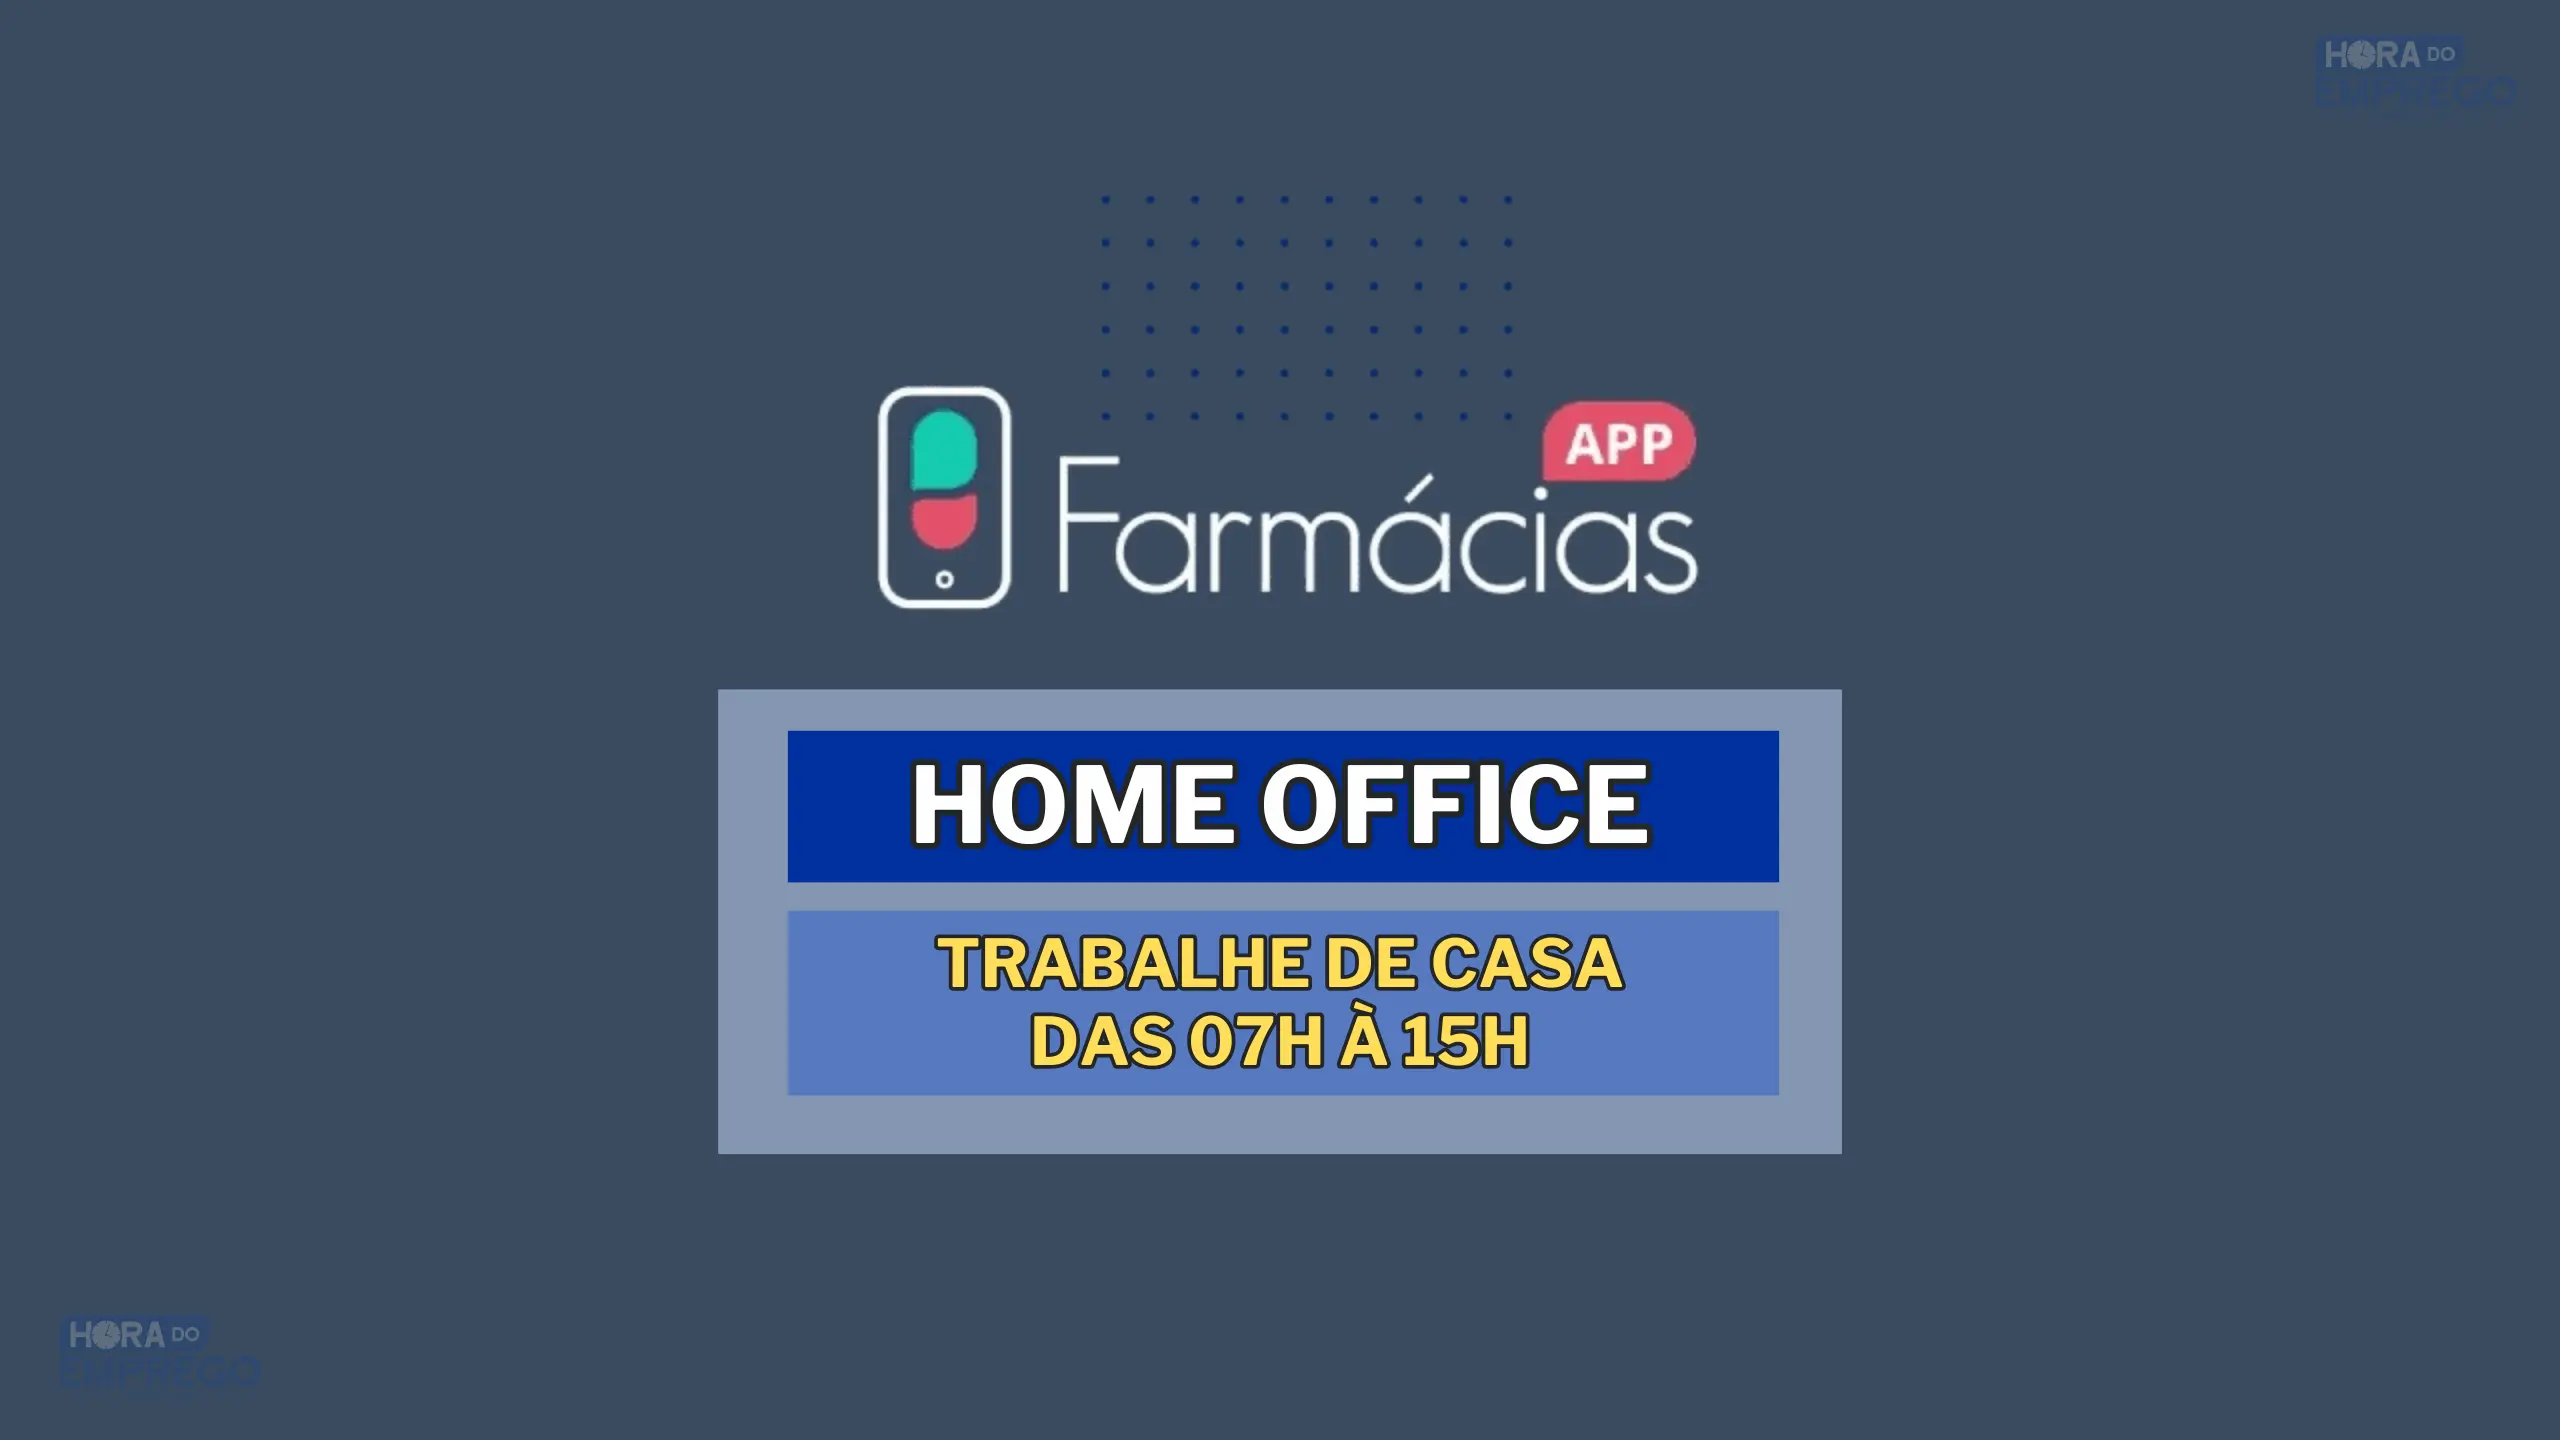 Home Office: Trabalhe de Casa das 07h à 15h para a empresa Farmácias APP no cargo de Auxiliar de Atendimento